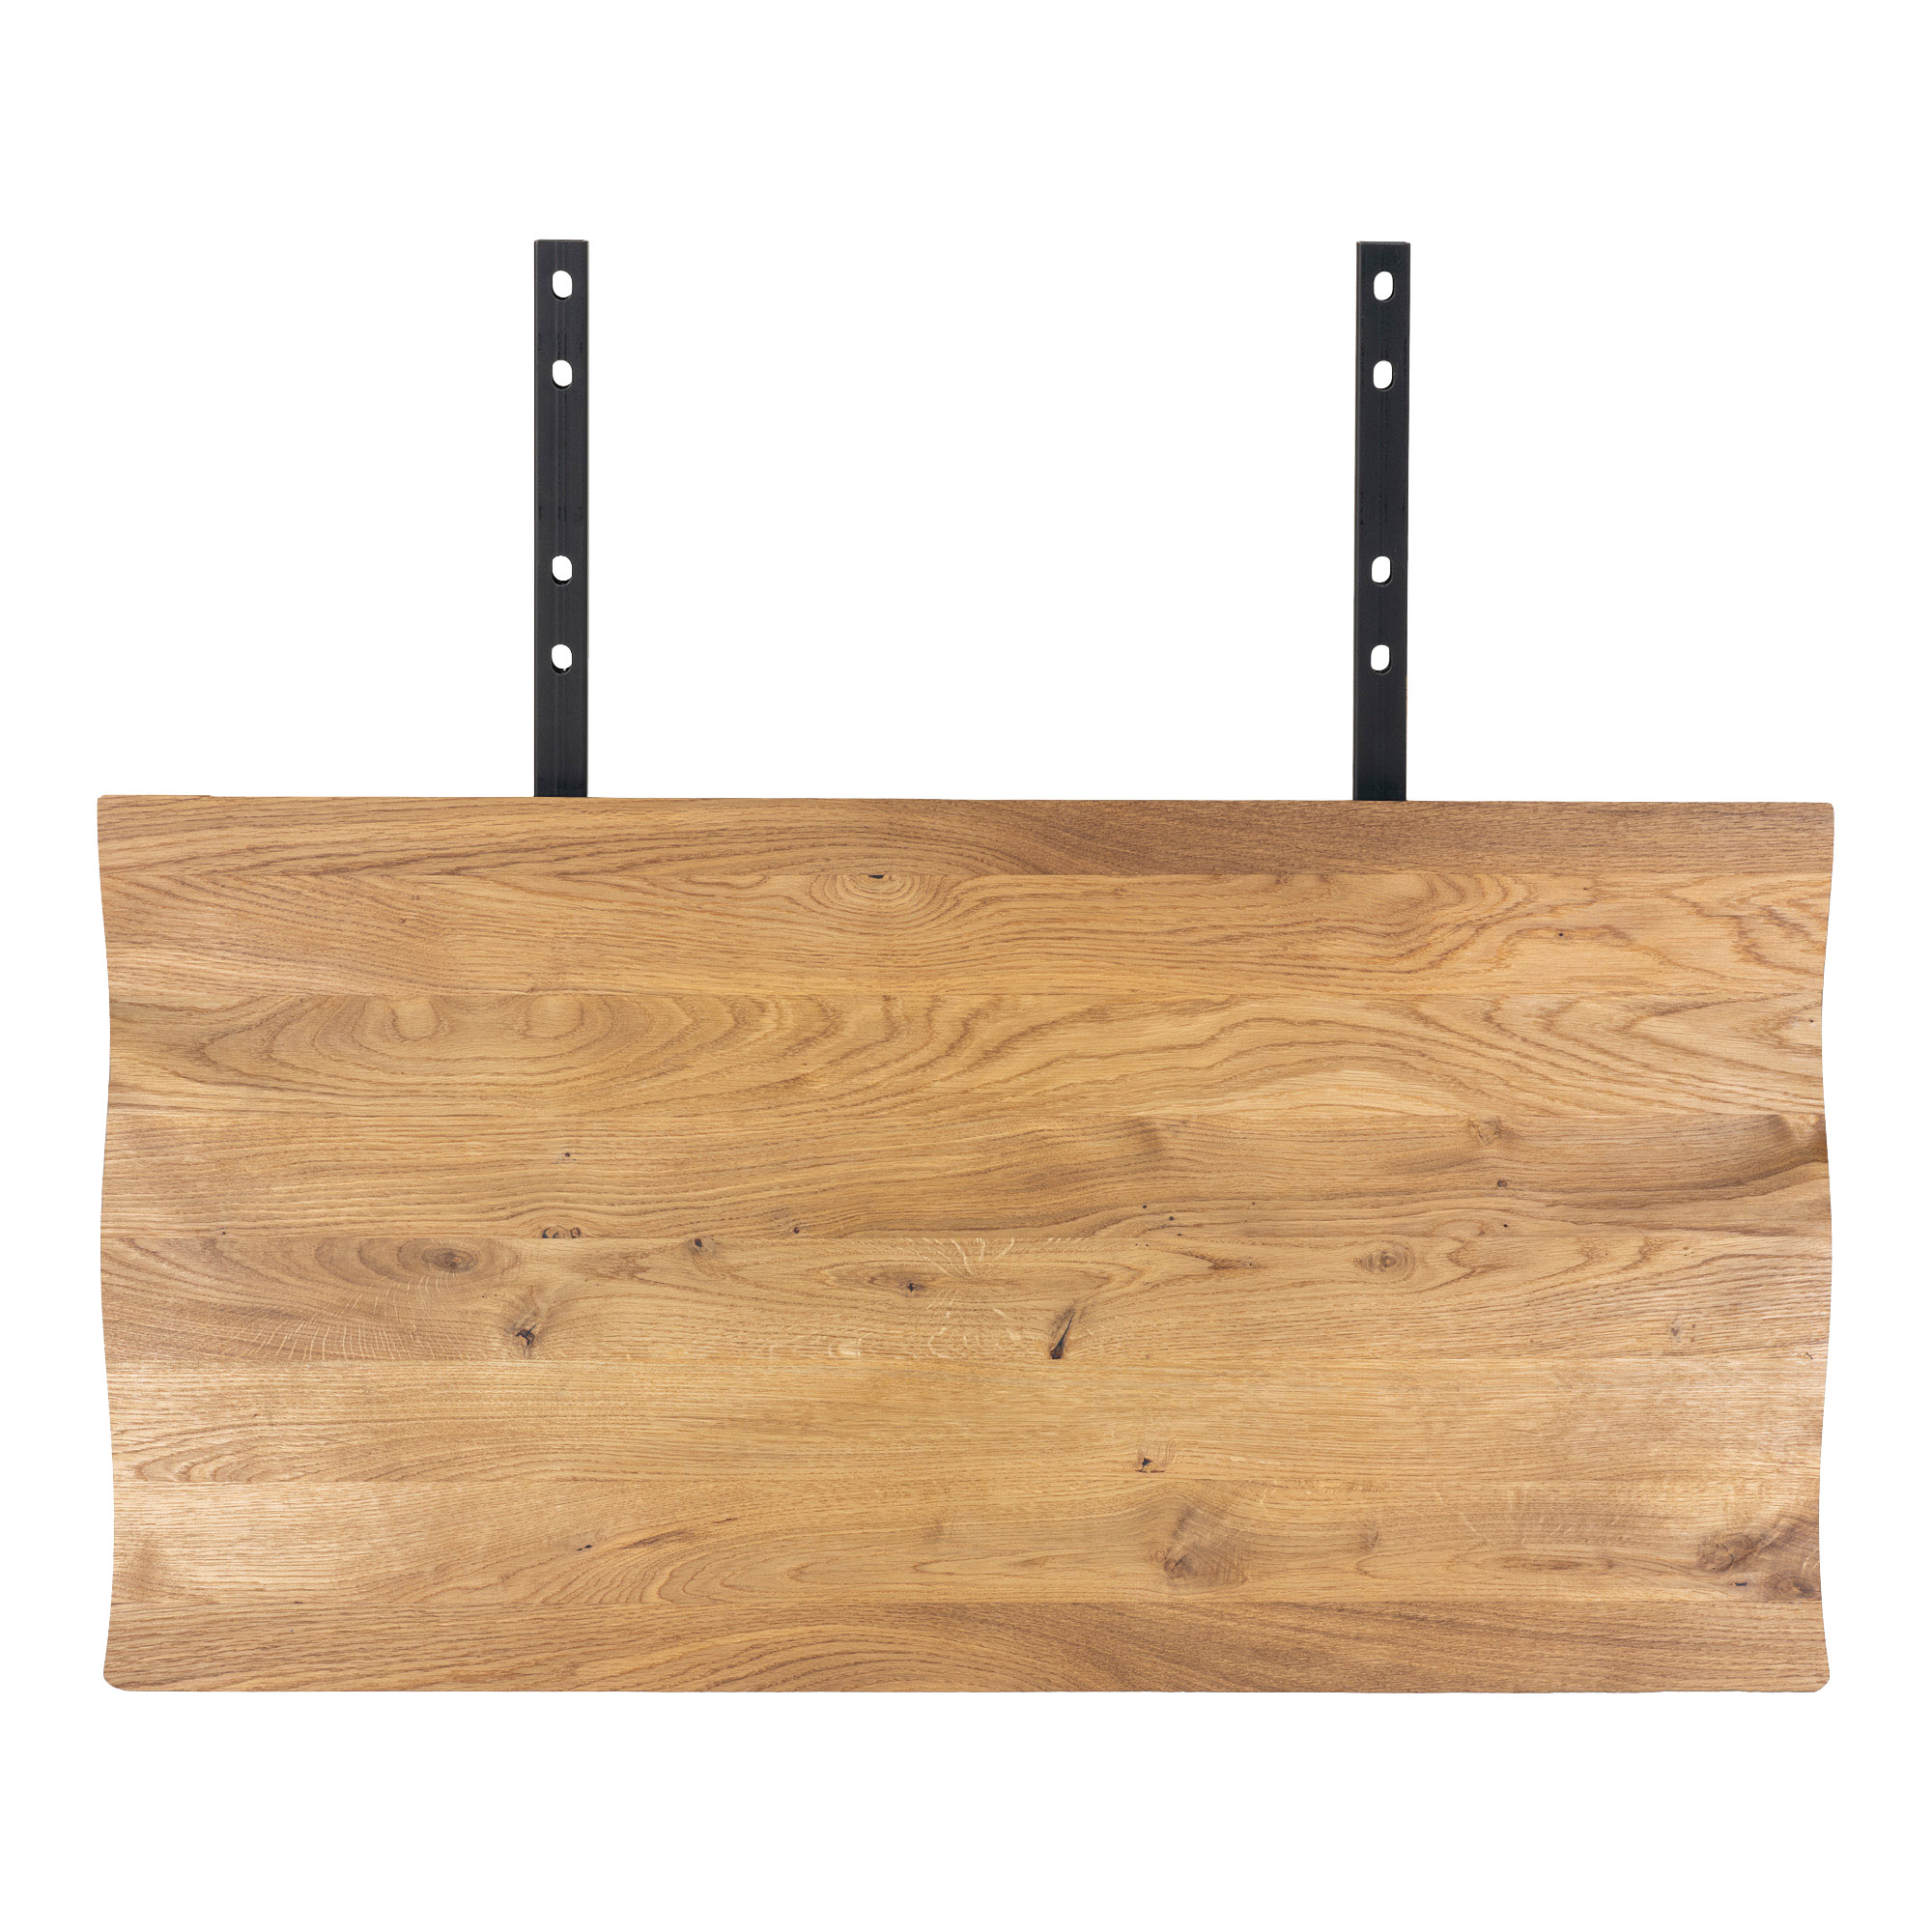 10: Juva - Spisebord i olieret  eg, 95 x 200 cm, med eller uden tillægsplader Med 2 tillægsplader